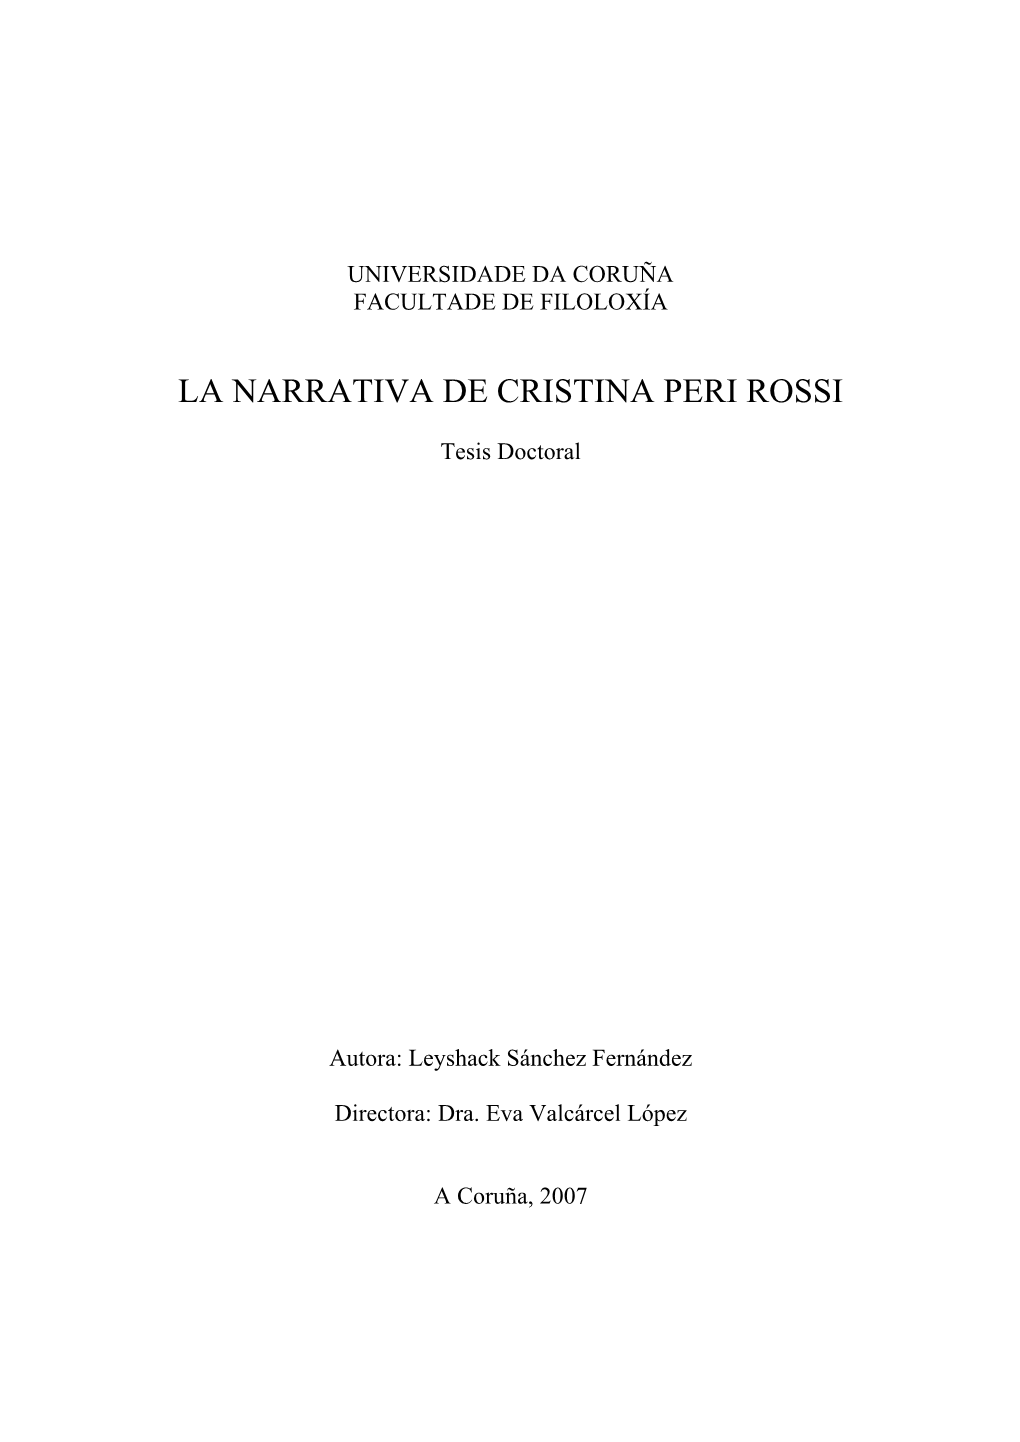 La Narrativa De Cristina Peri Rossi